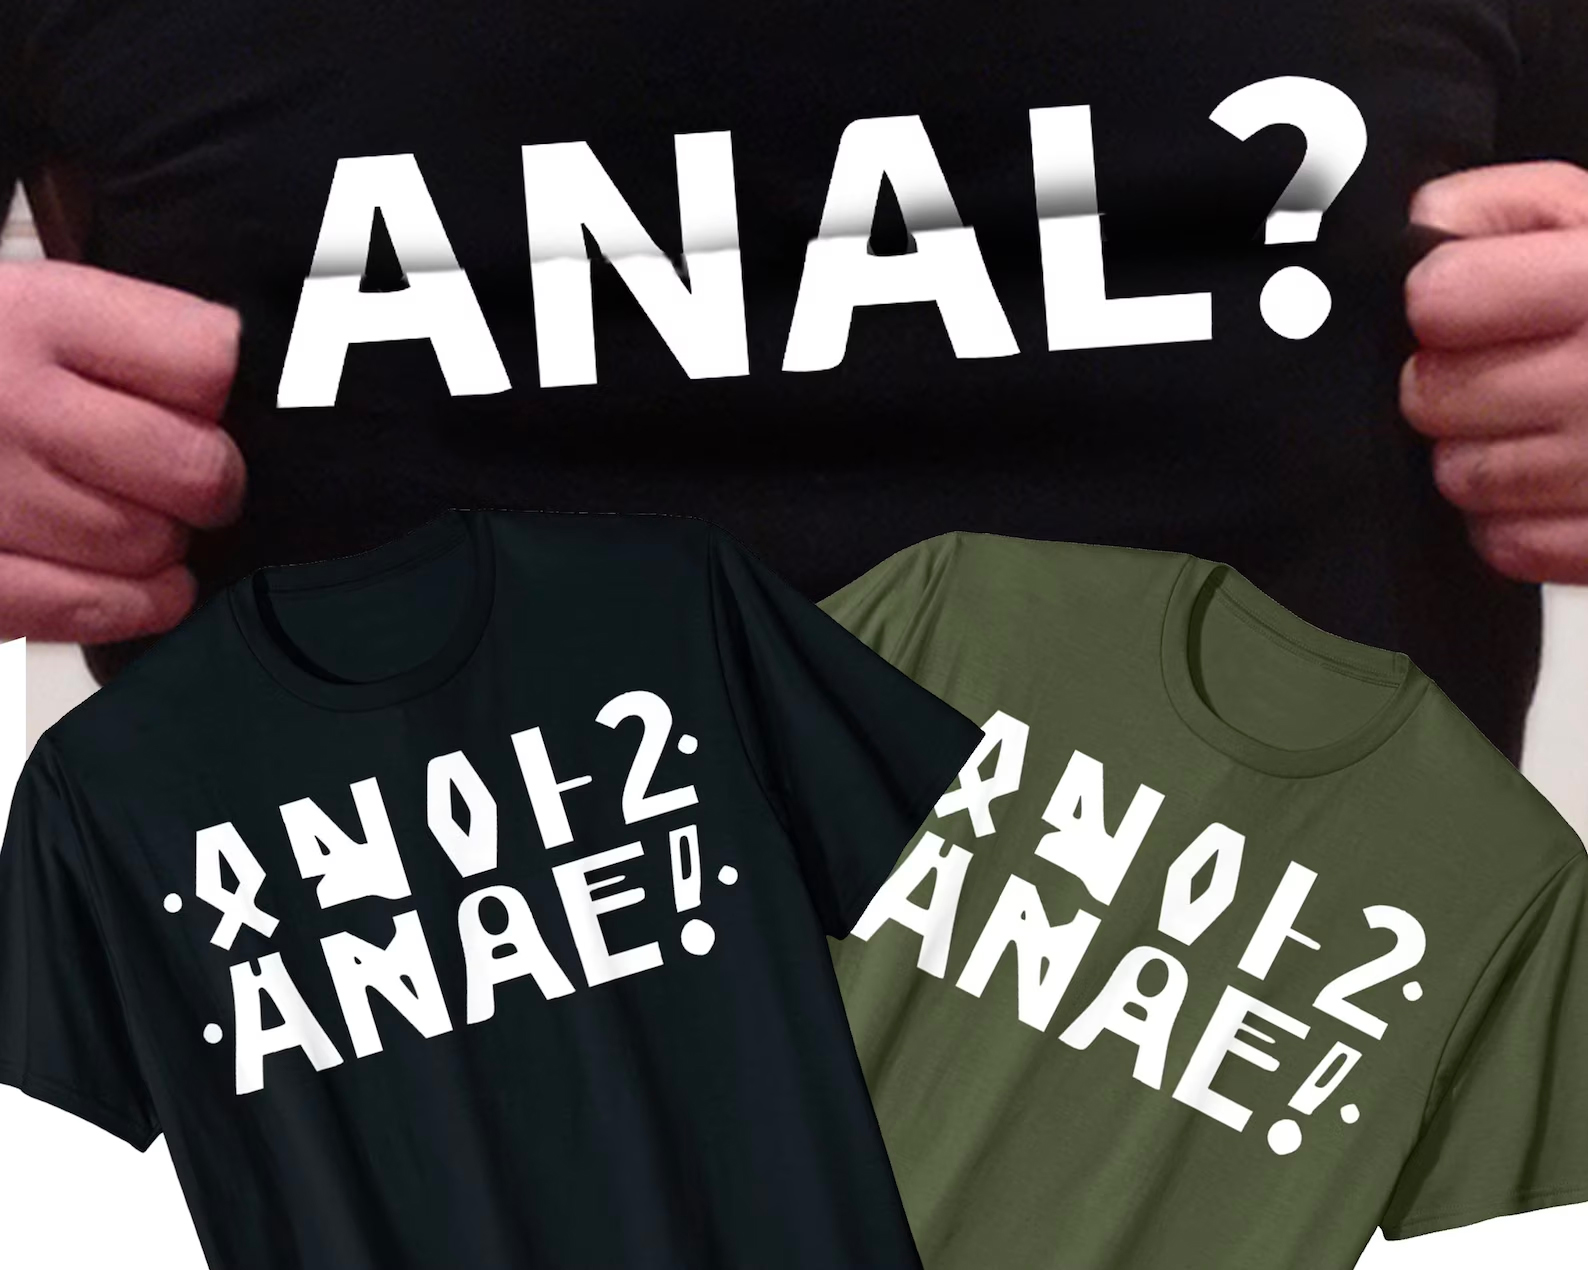 Anal? Hidden Message.